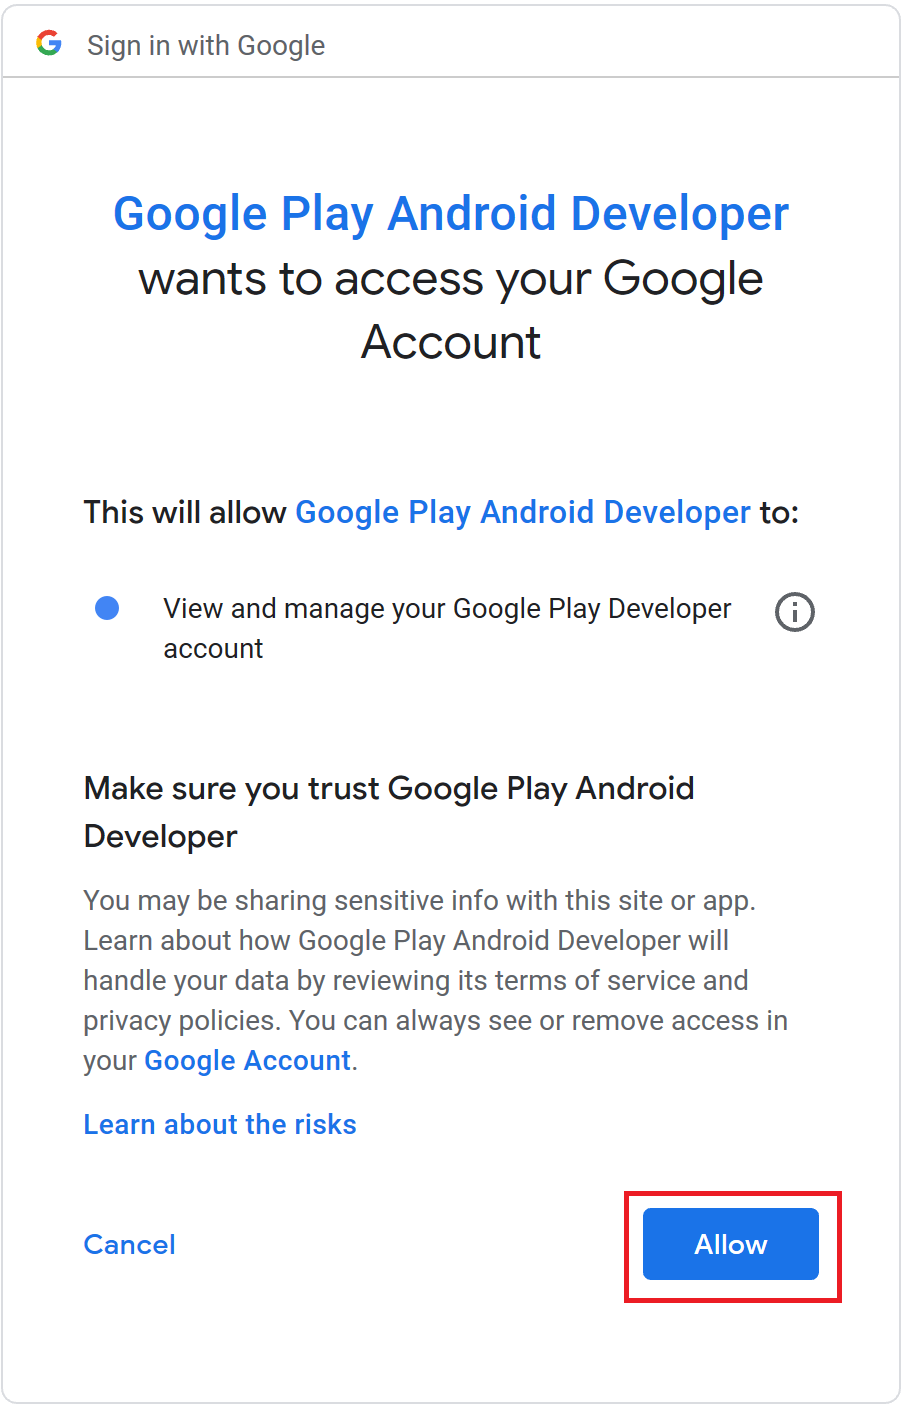 Publicación en Google Play - Xamarin | Microsoft Learn